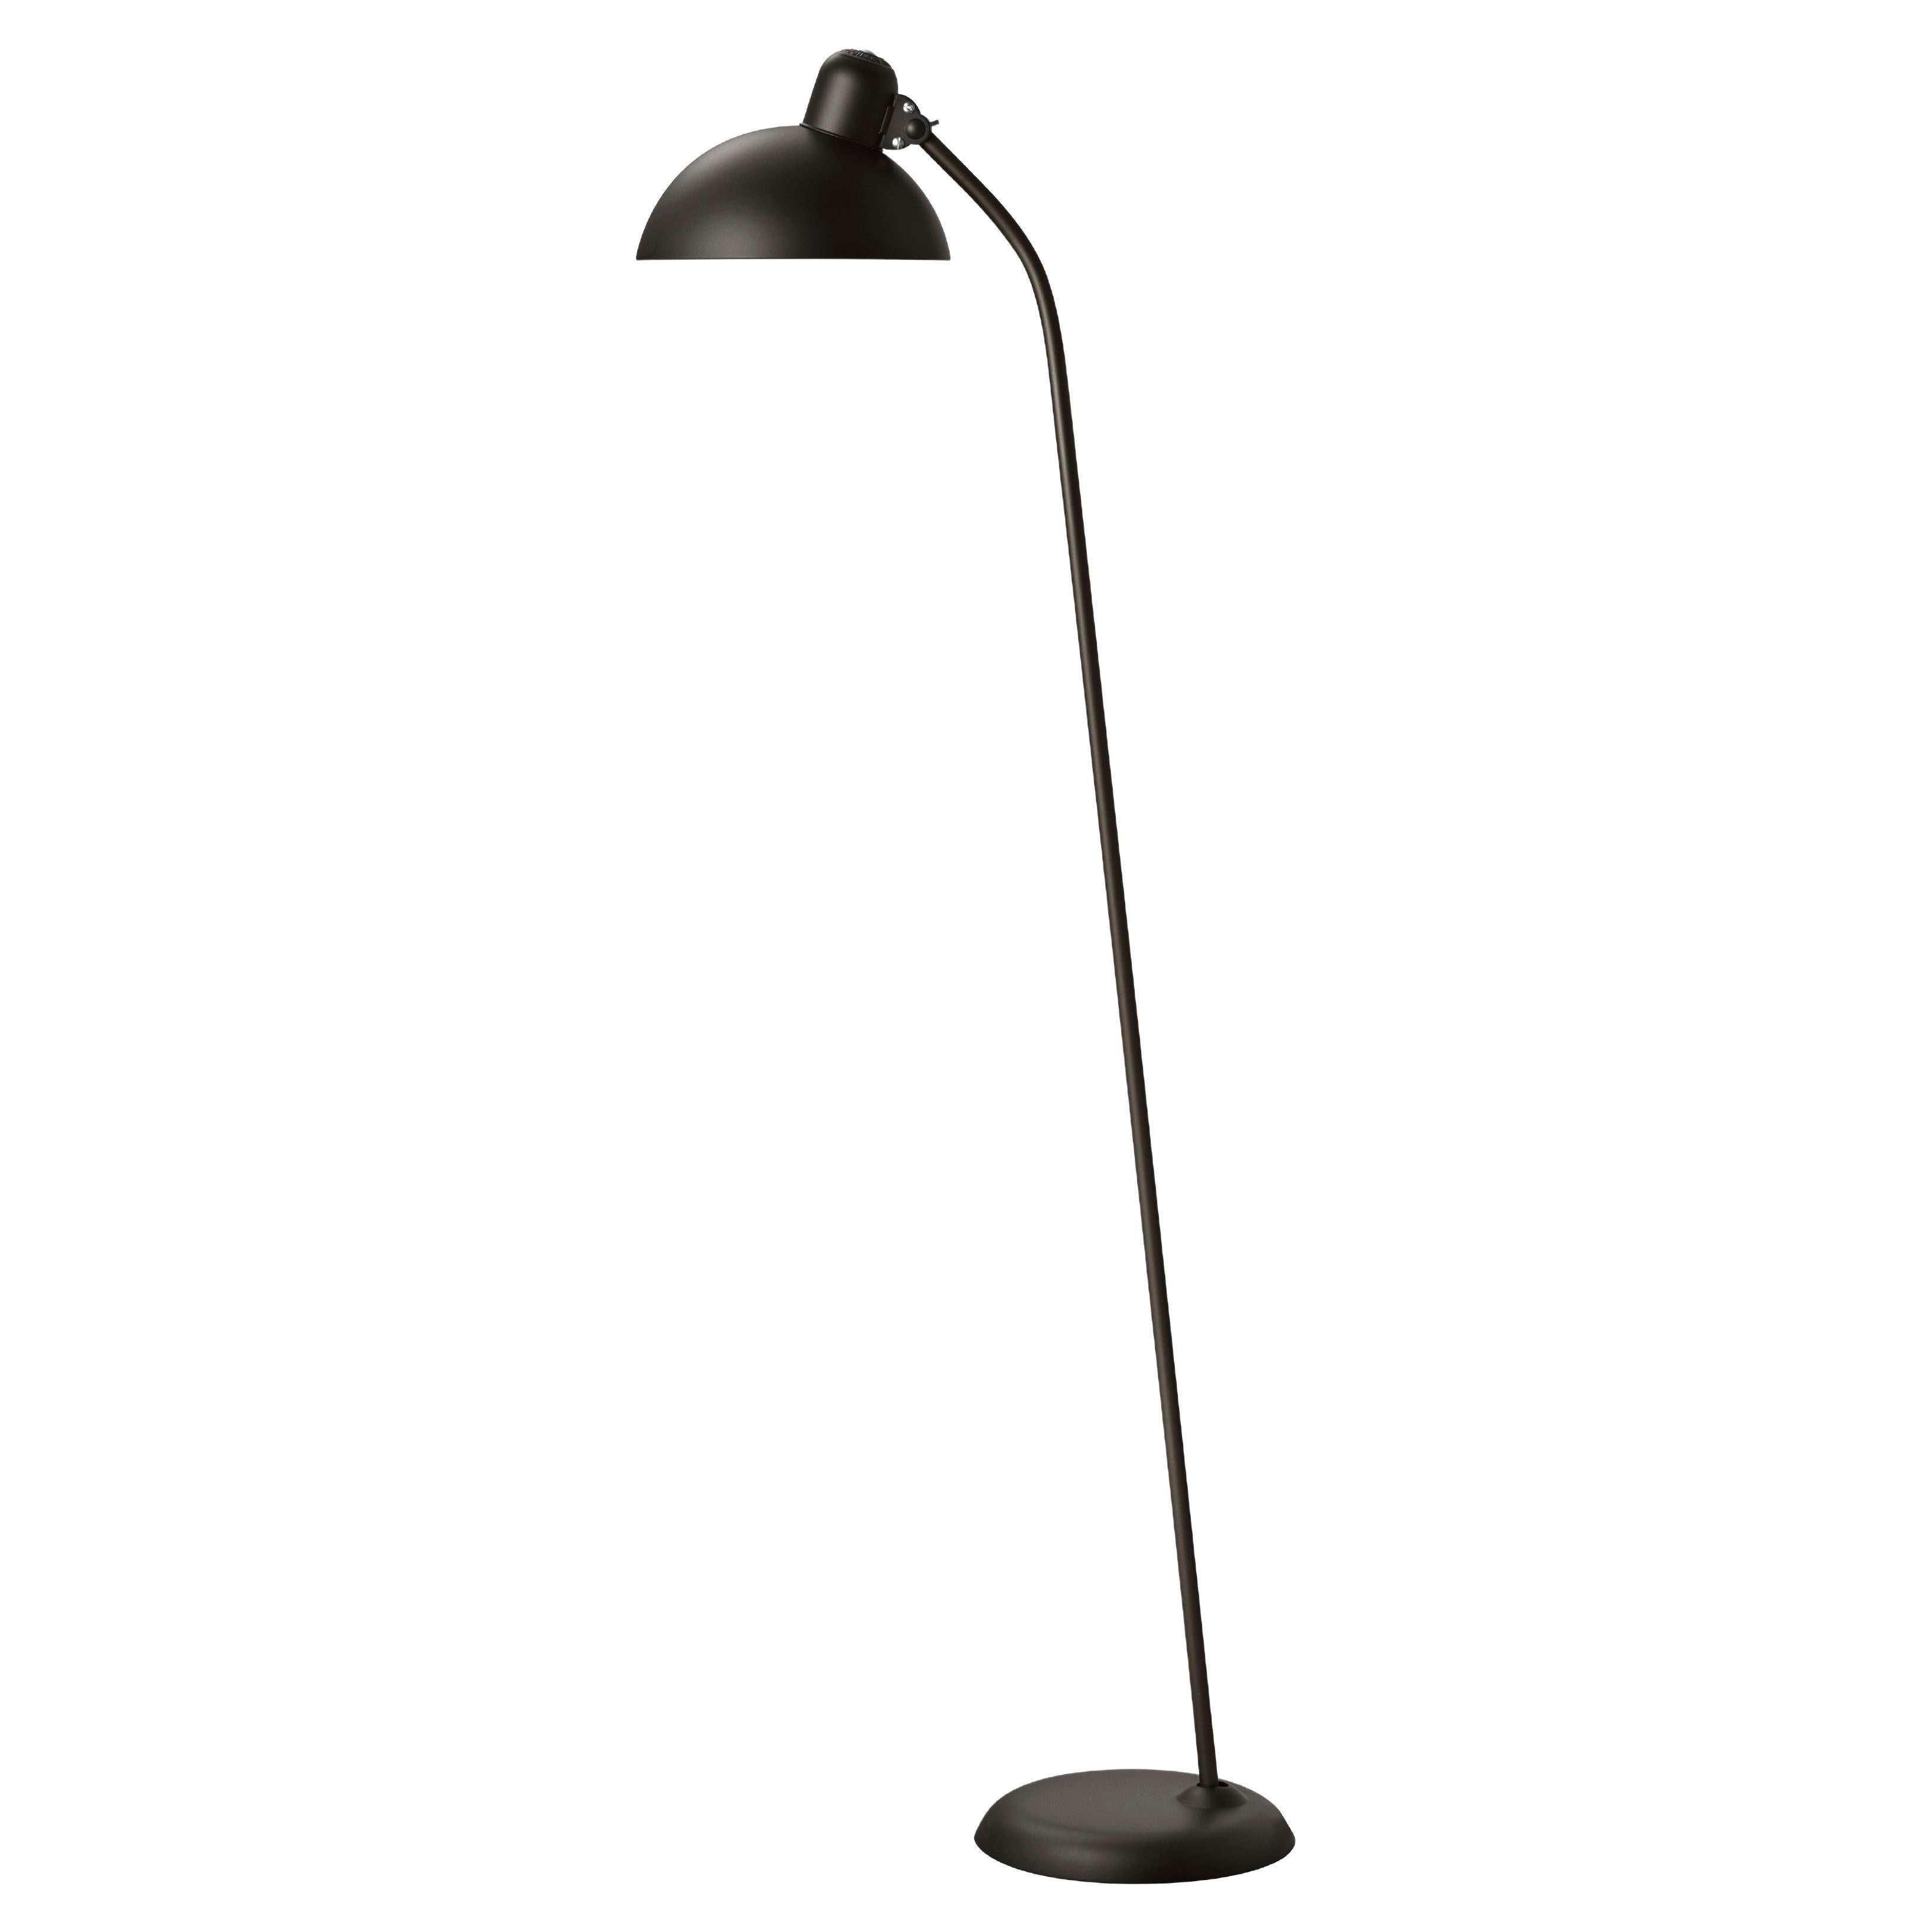 Christian Dell 'Kaiser Idell 6556-F' Floor Lamp for Fritz Hansen in Matte Black For Sale